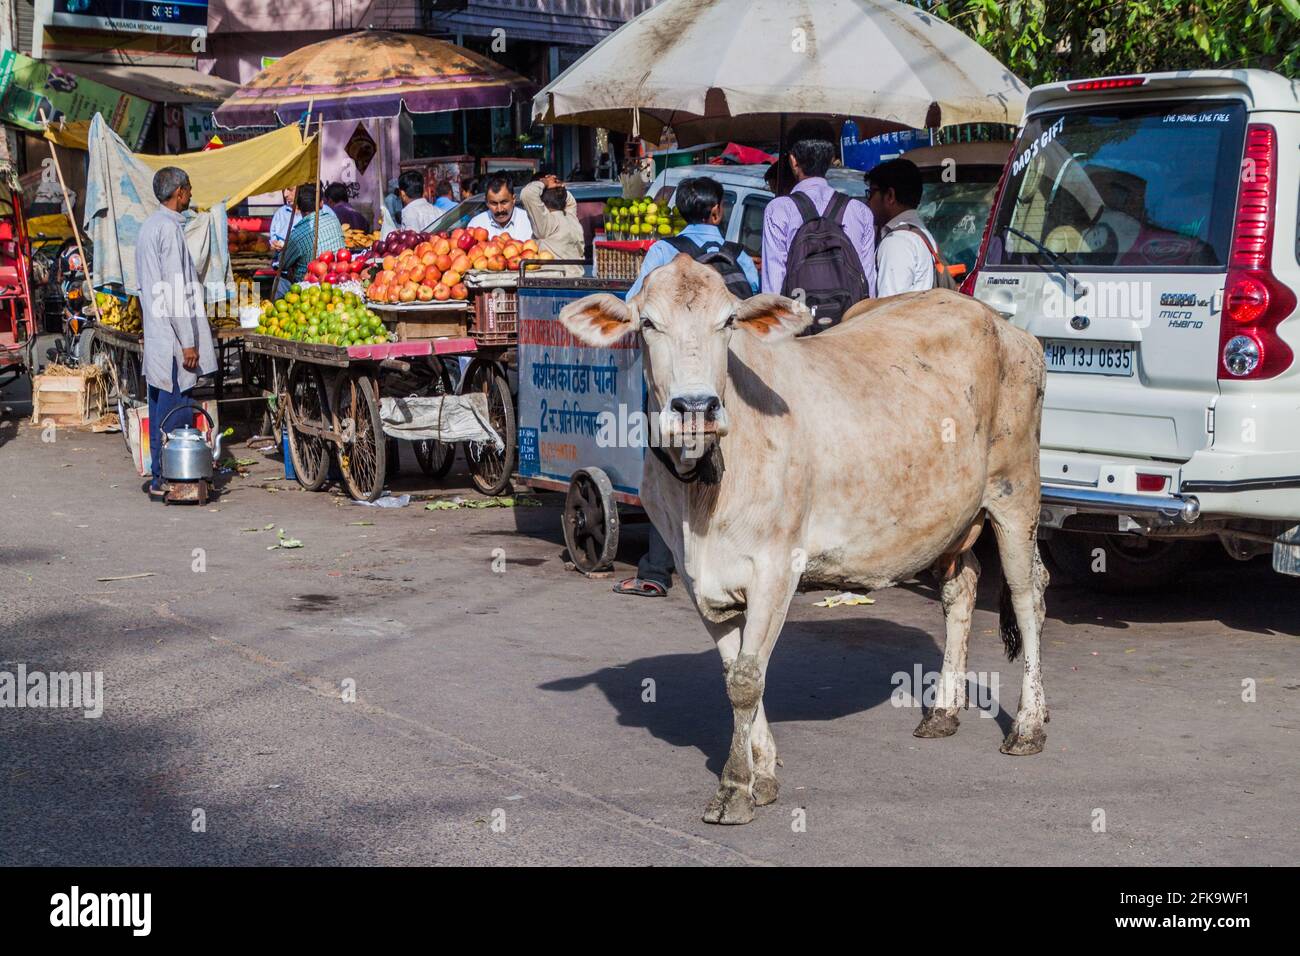 DELHI, INDE - 22 OCTOBRE 2016 : vache dans une rue du centre de Delhi, Inde. Banque D'Images